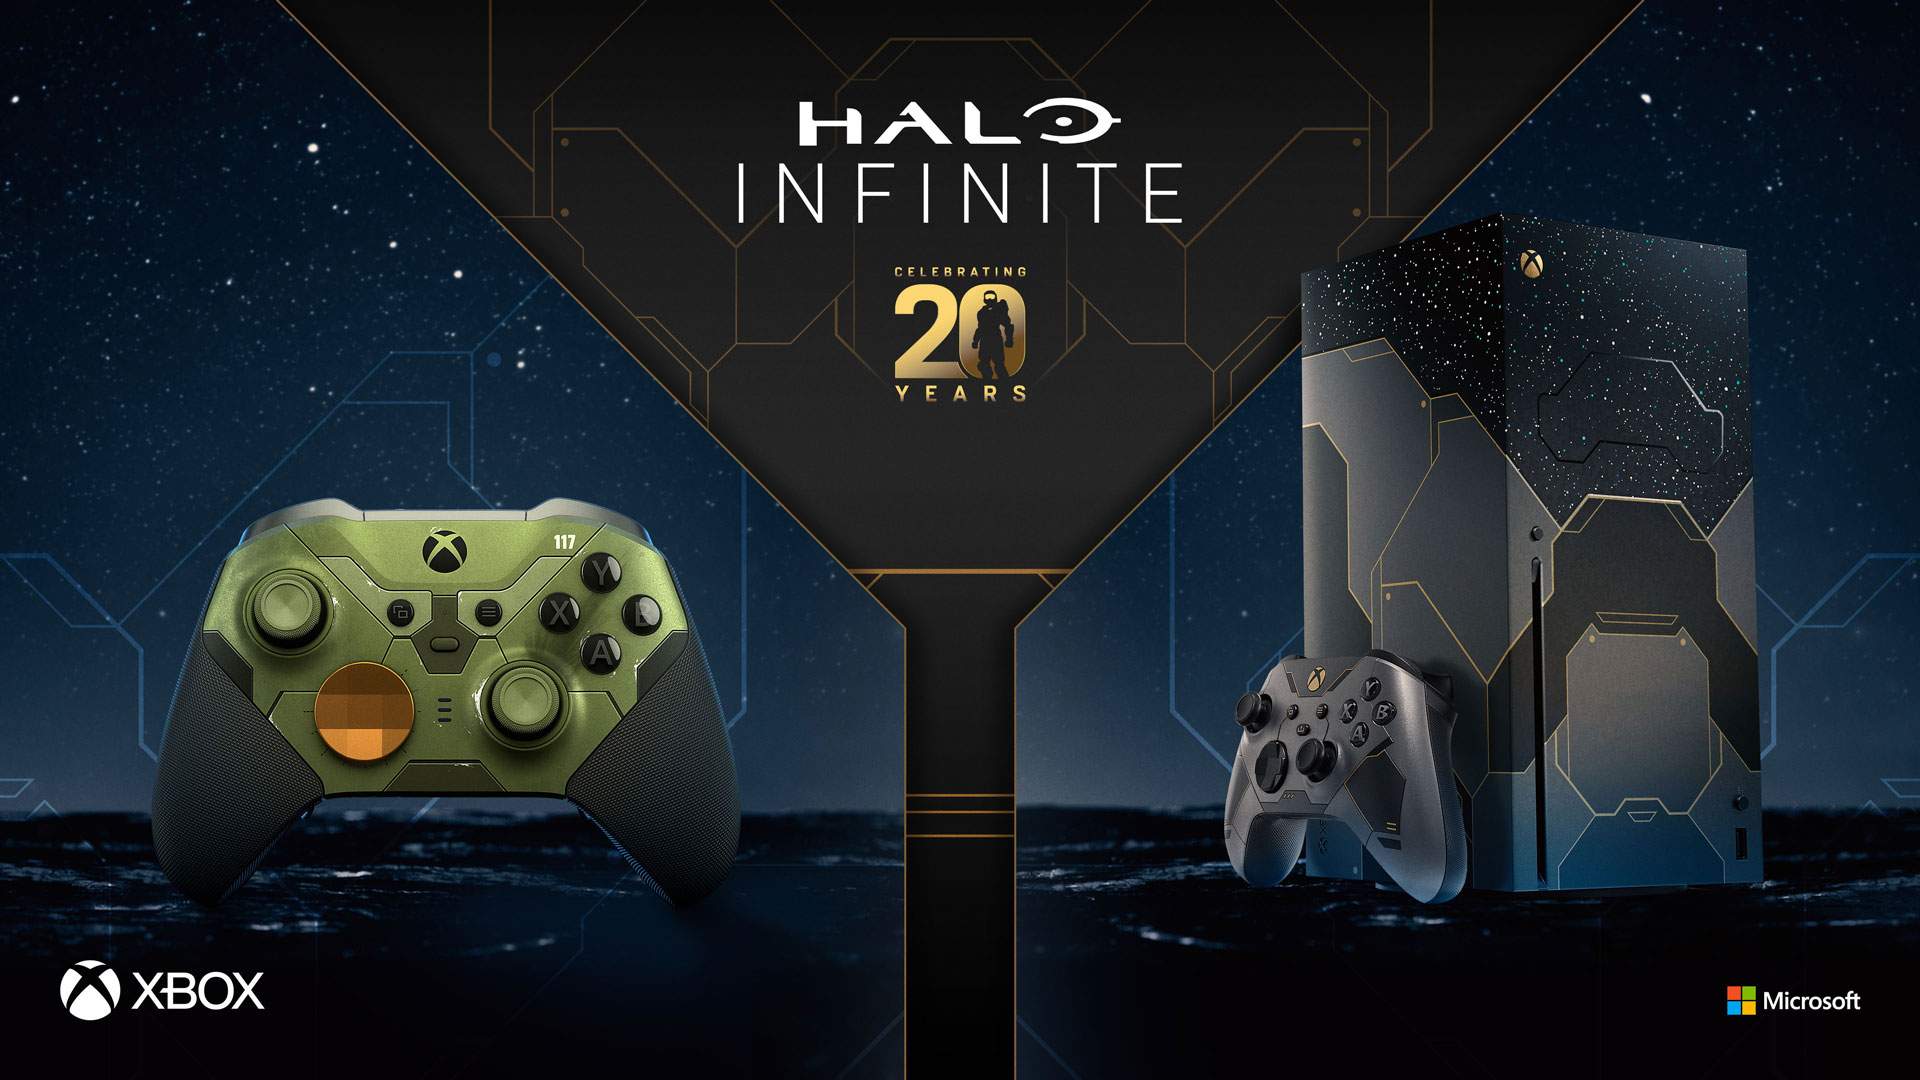 Η Microsoft ανακοίνωσε την επετειακή έκδοση του Xbox Series X για τα 20 χρόνια του Halo